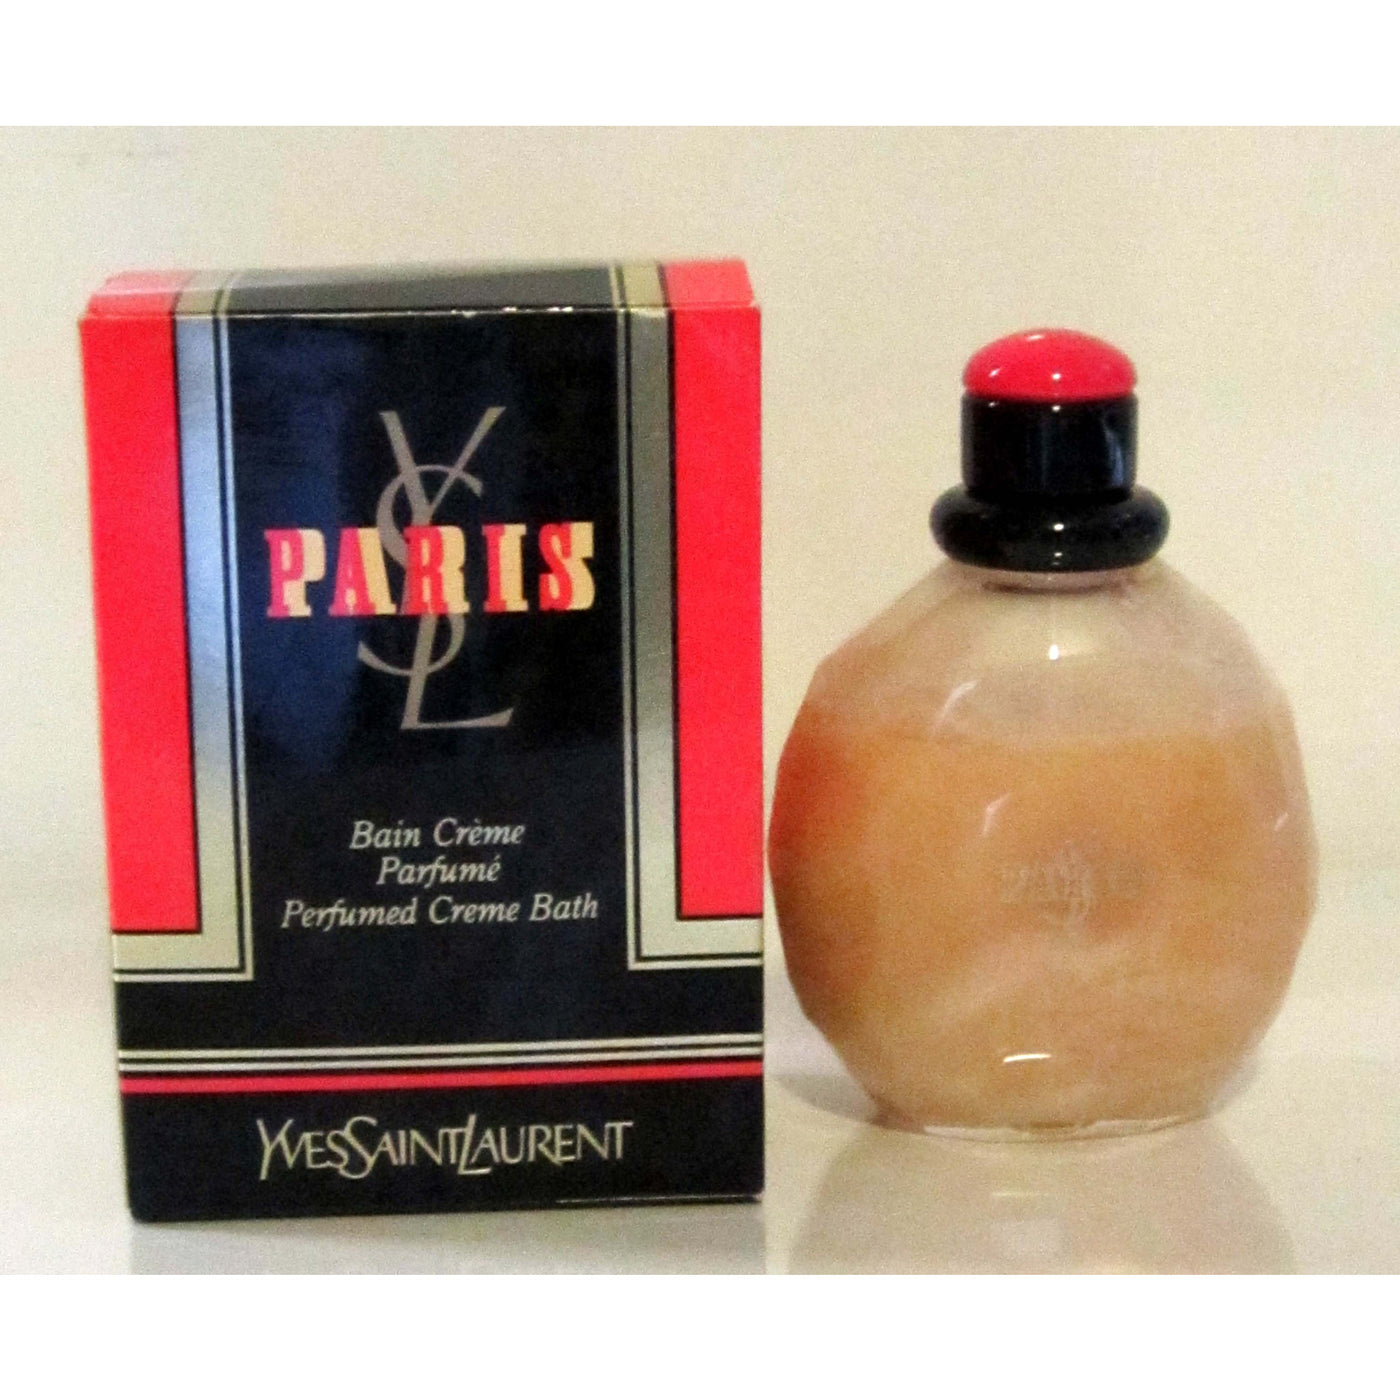 Vintage Yves Saint Laurent Paris Perfumed Creme Bath